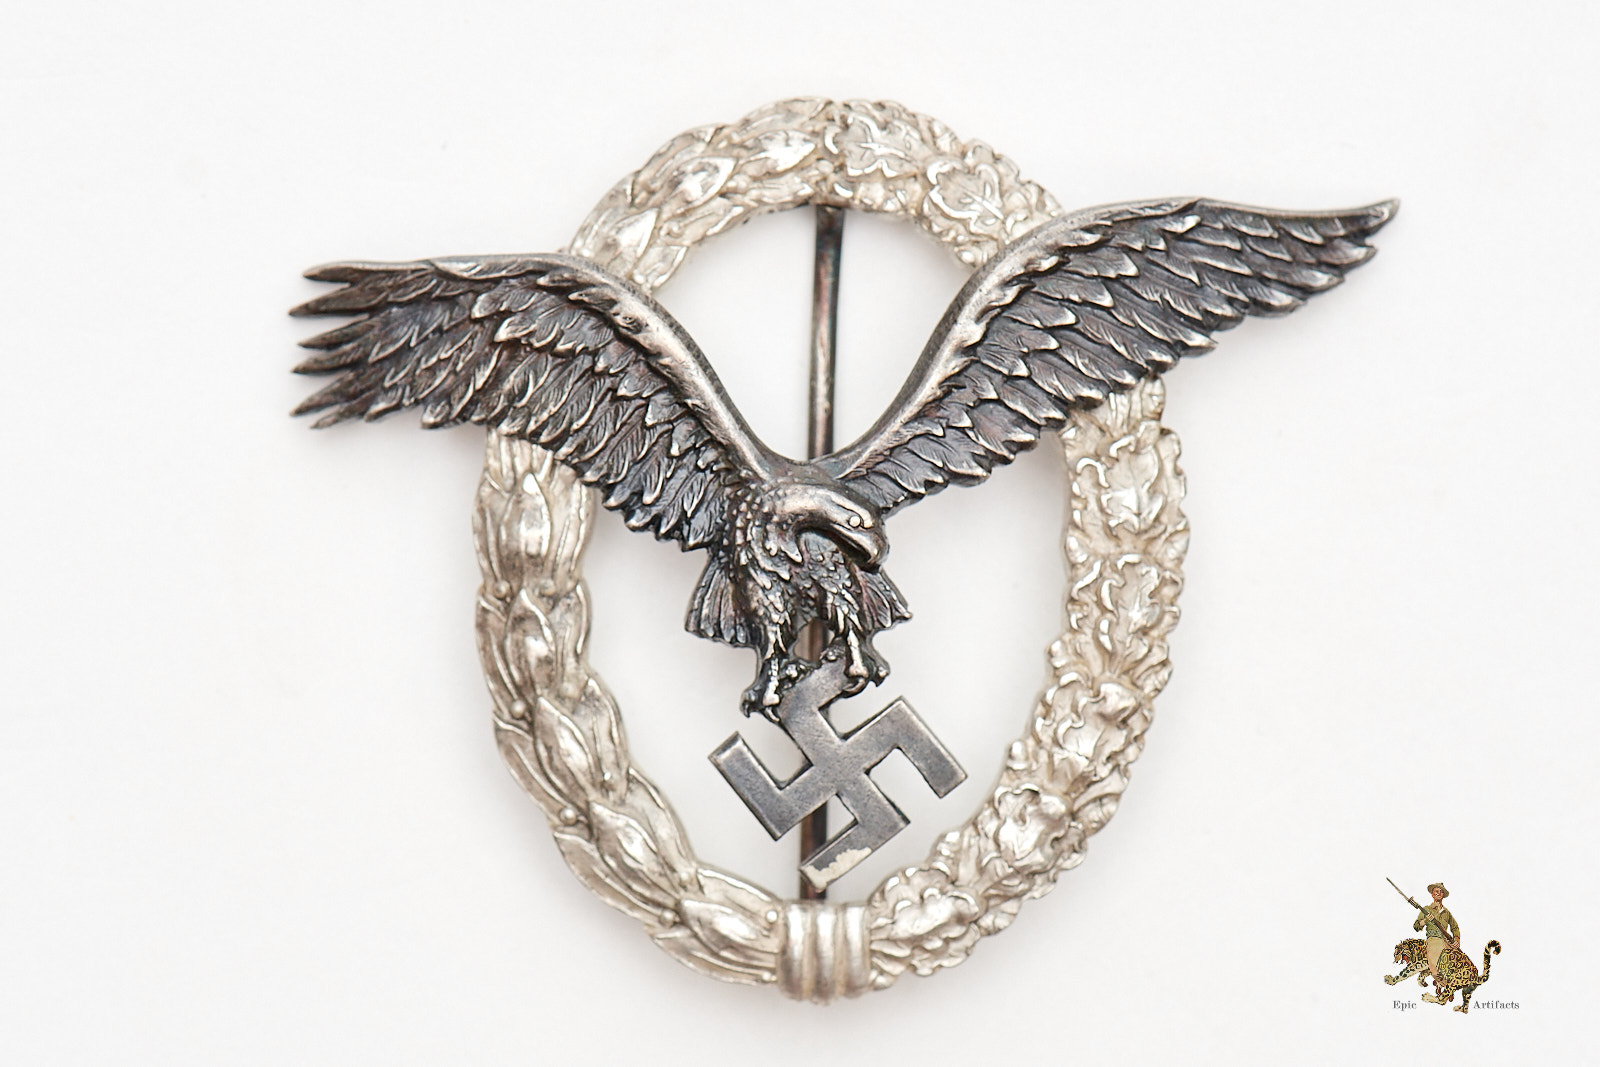 CEJ Pilot Badge - Epic Artifacts